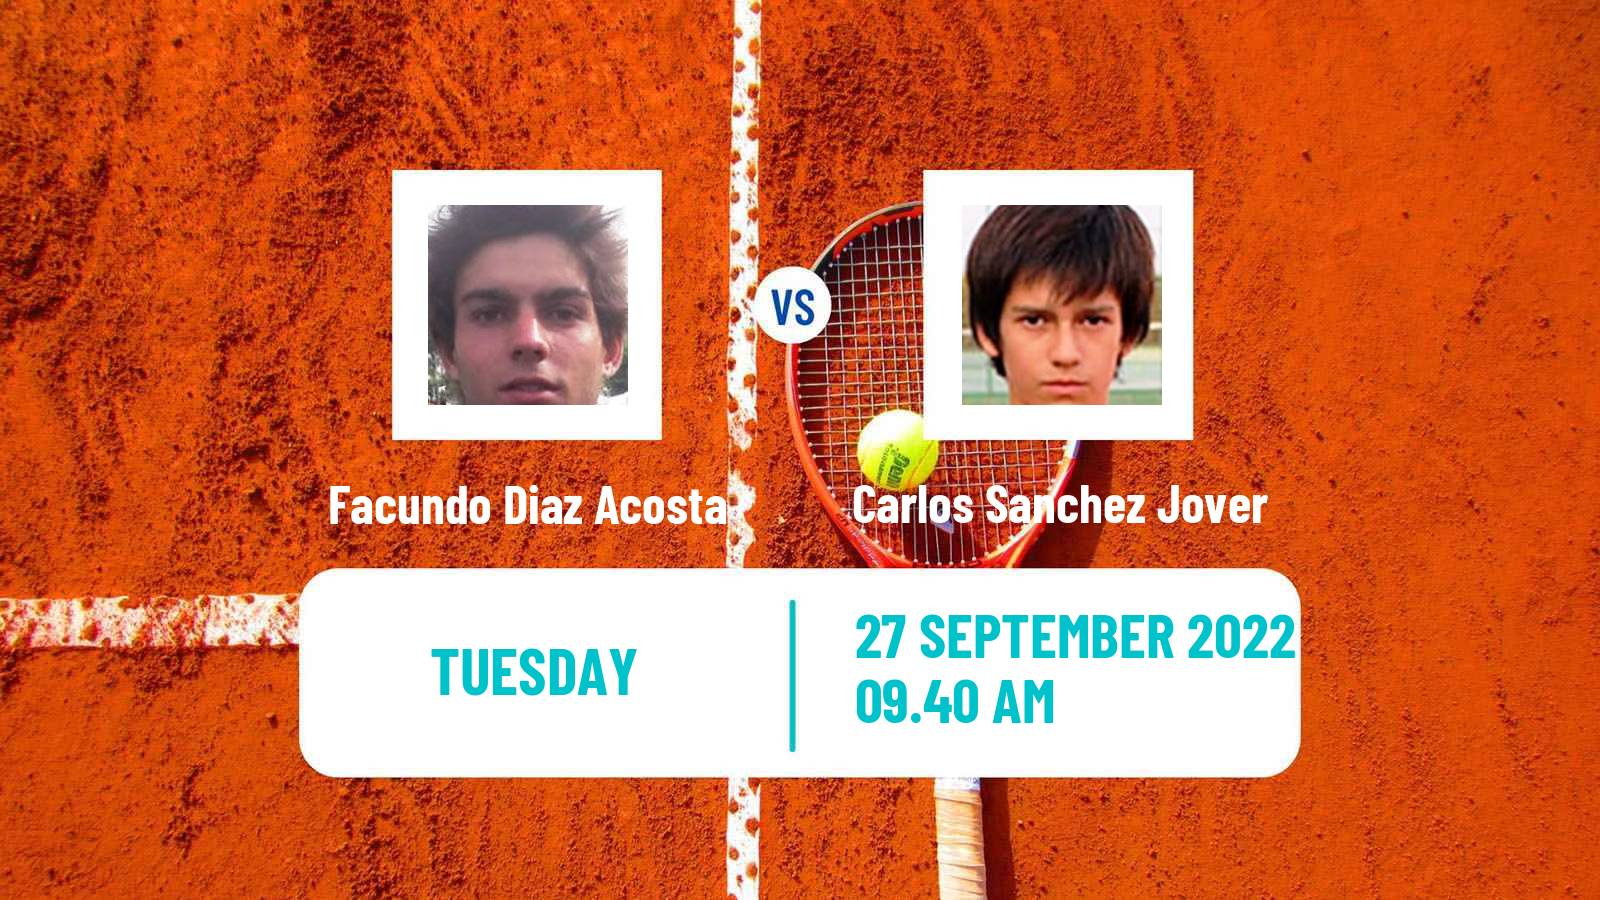 Tennis ATP Challenger Facundo Diaz Acosta - Carlos Sanchez Jover